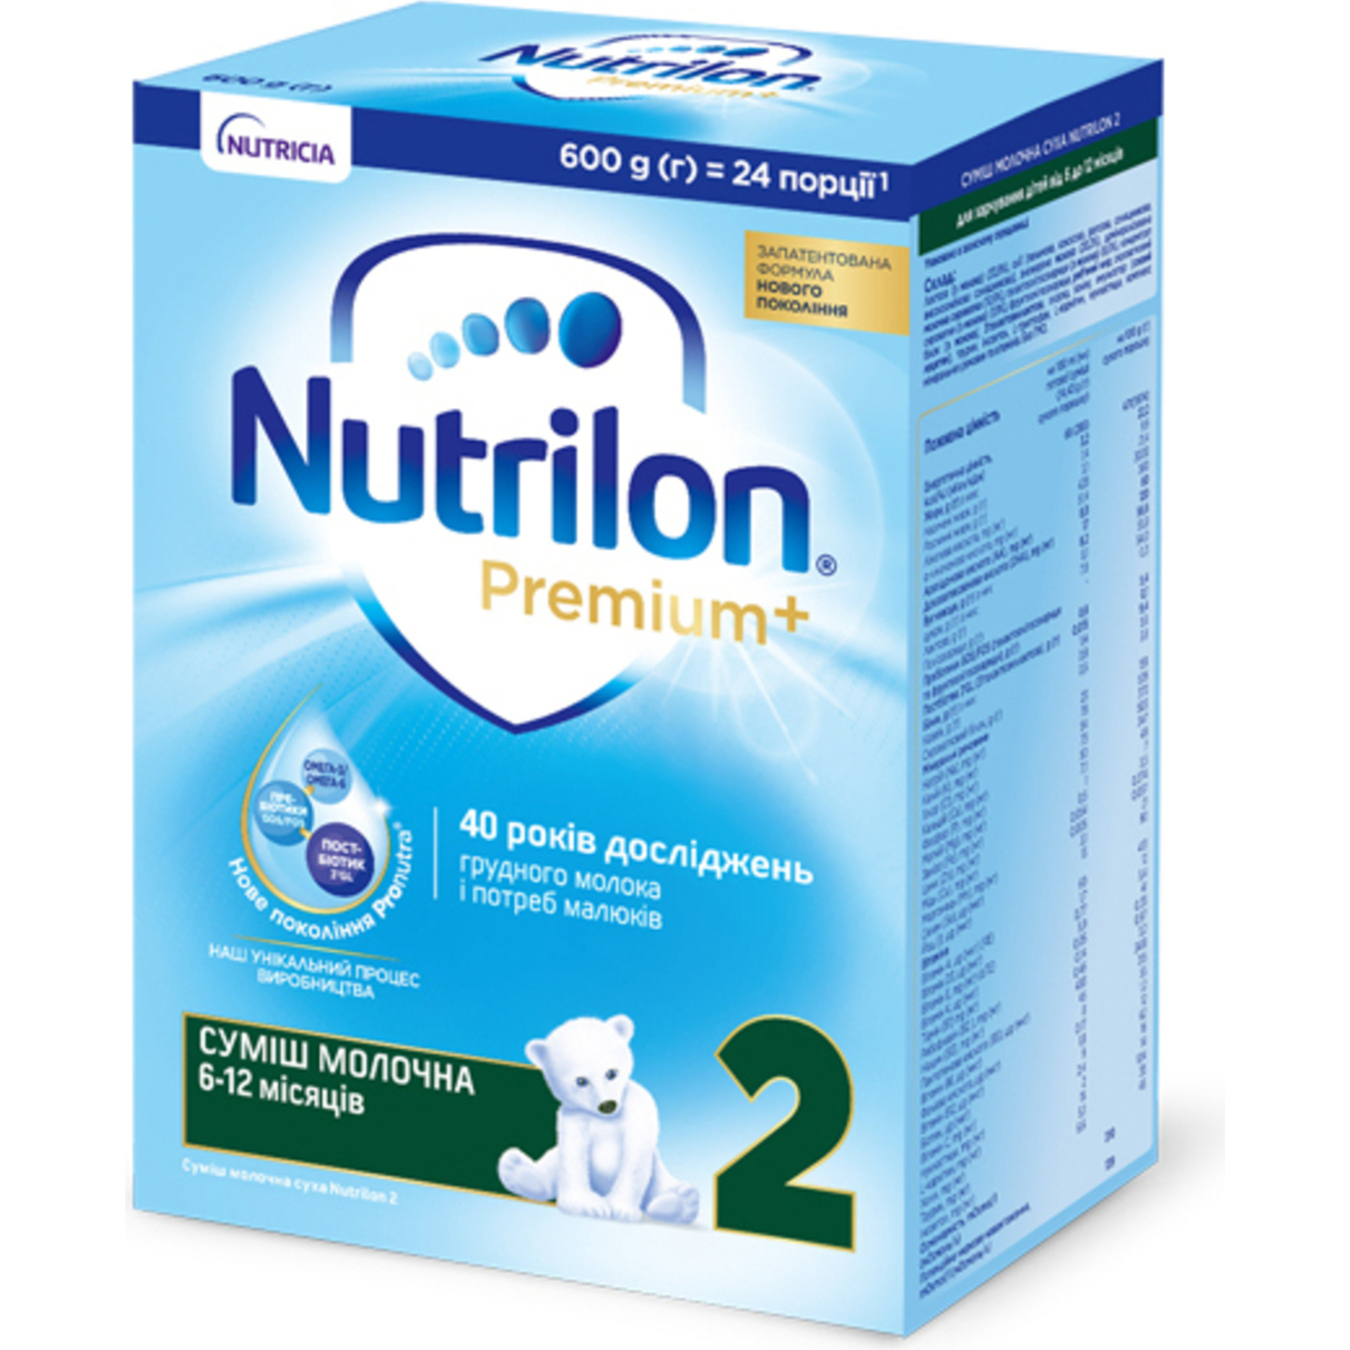 NAN, Optipro 2 Milk For Infants, 400 or 800g